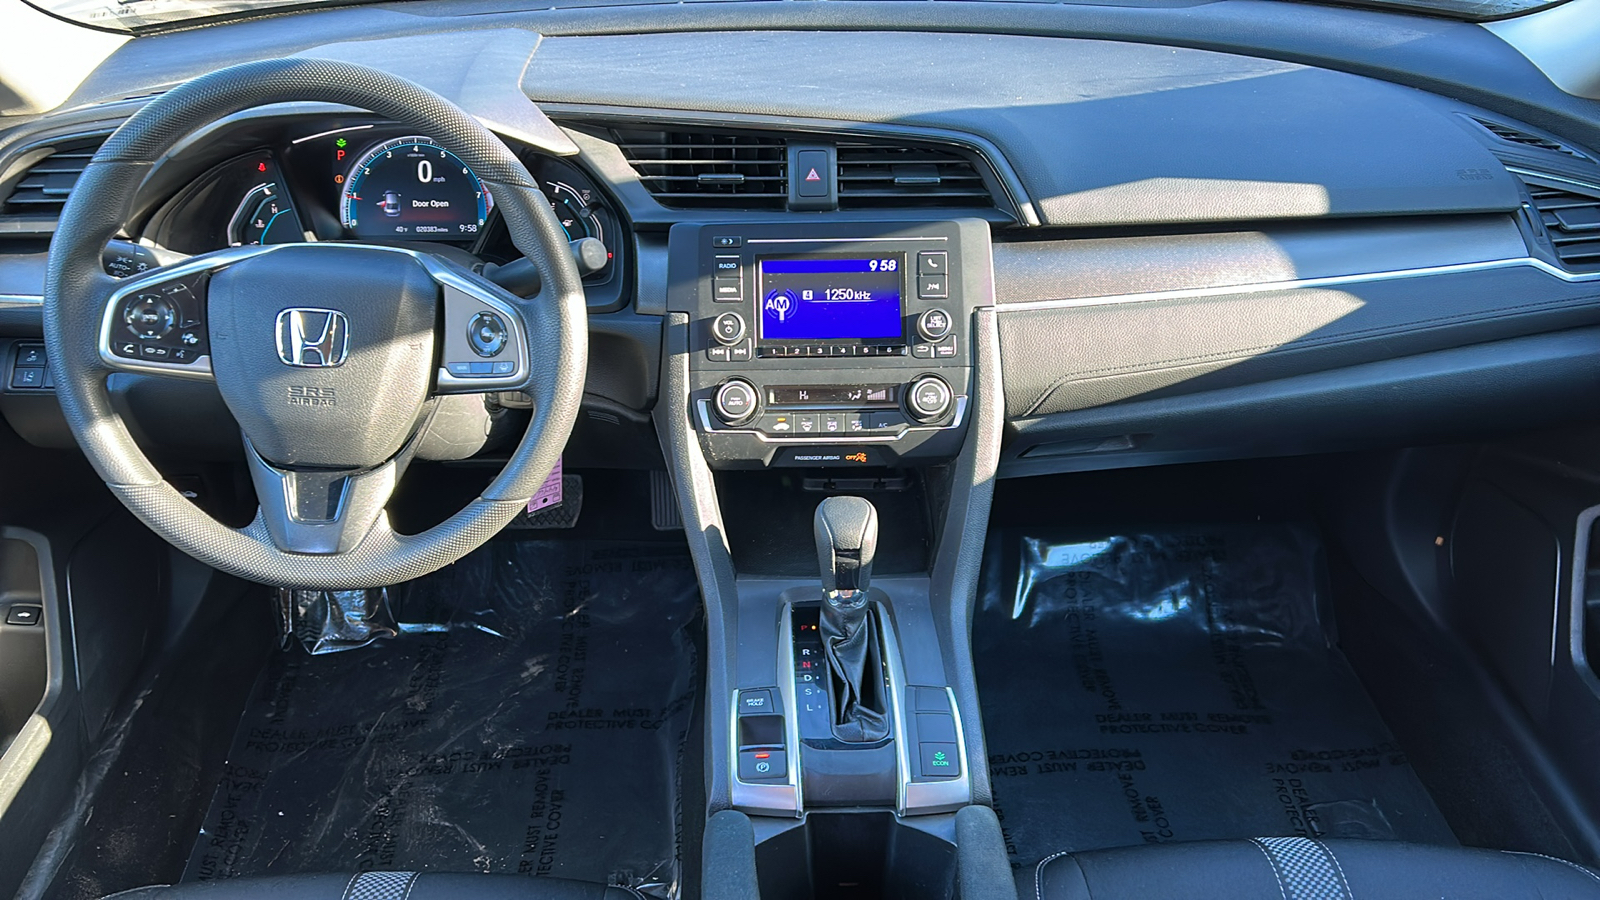 2019 Honda Civic LX 10